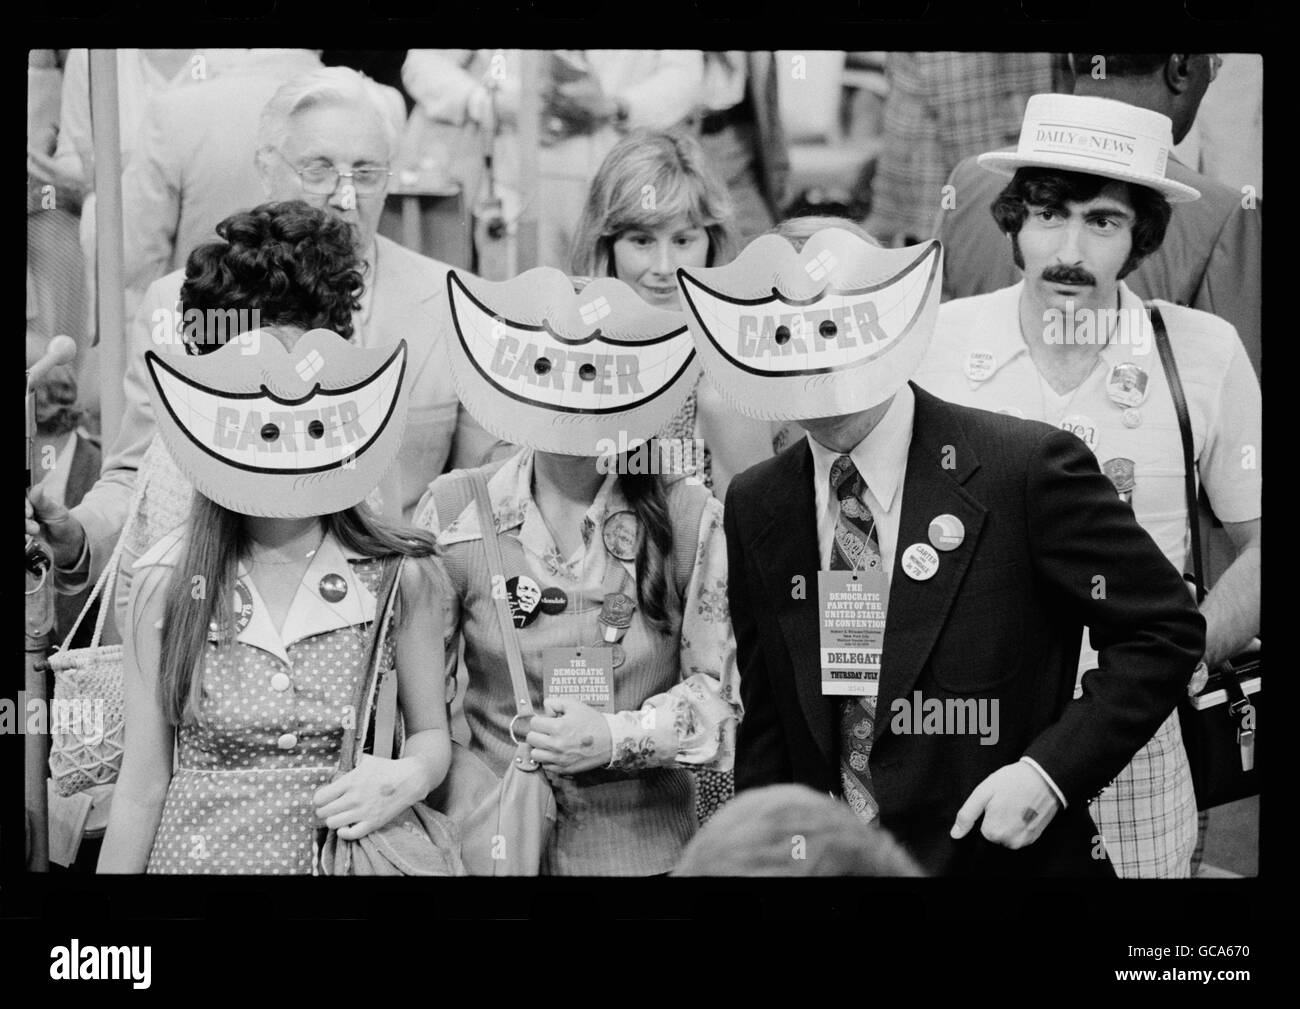 Sourire masques portés par les délégués à la Convention de mise en candidature présidentielle de 1976. Le masque était une référence à Jimmy Carter's célèbre sourire lumineux. Banque D'Images